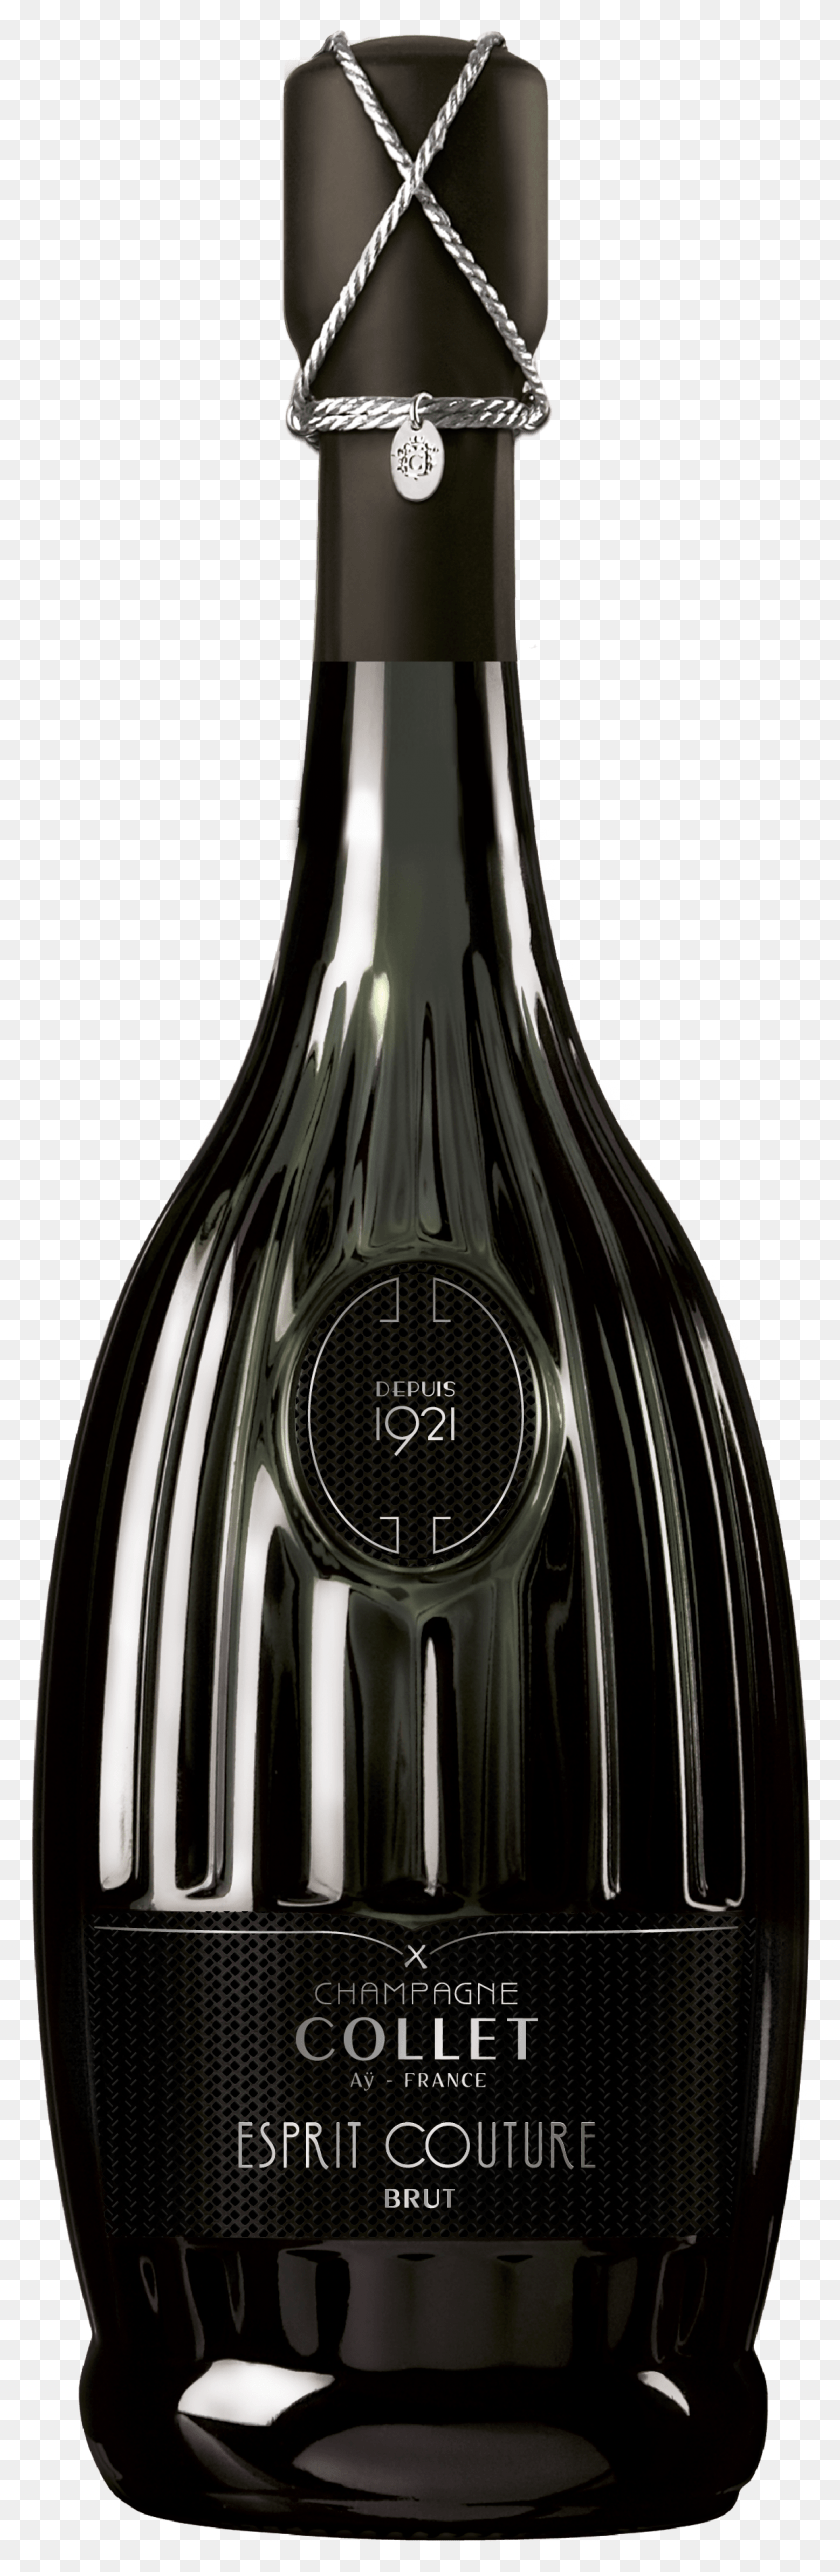 1156x3723 La Colección Más Increíble Y Hd De Champagne Collet, Esprit Couture, 50 Great Sparkling Champagne Collet, Esprit Couture Brut, Alcohol, Bebida, Bebida Hd Png.